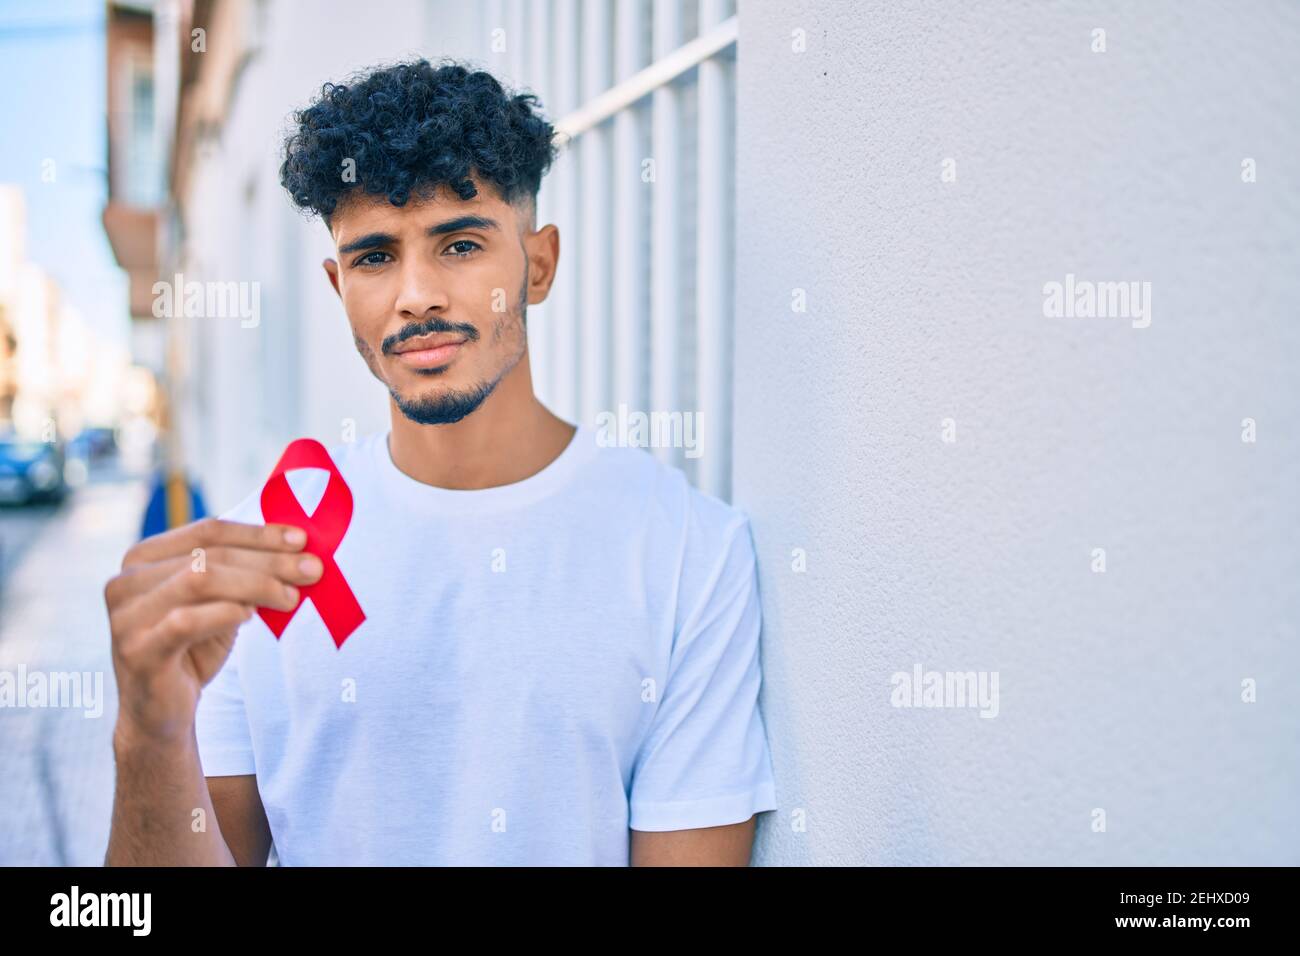 Junger arabischer Mann mit ernstem Ausdruck, der an der Wand gelehnt ein rotes Band mit hiv-Bewusstsein hält. Stockfoto